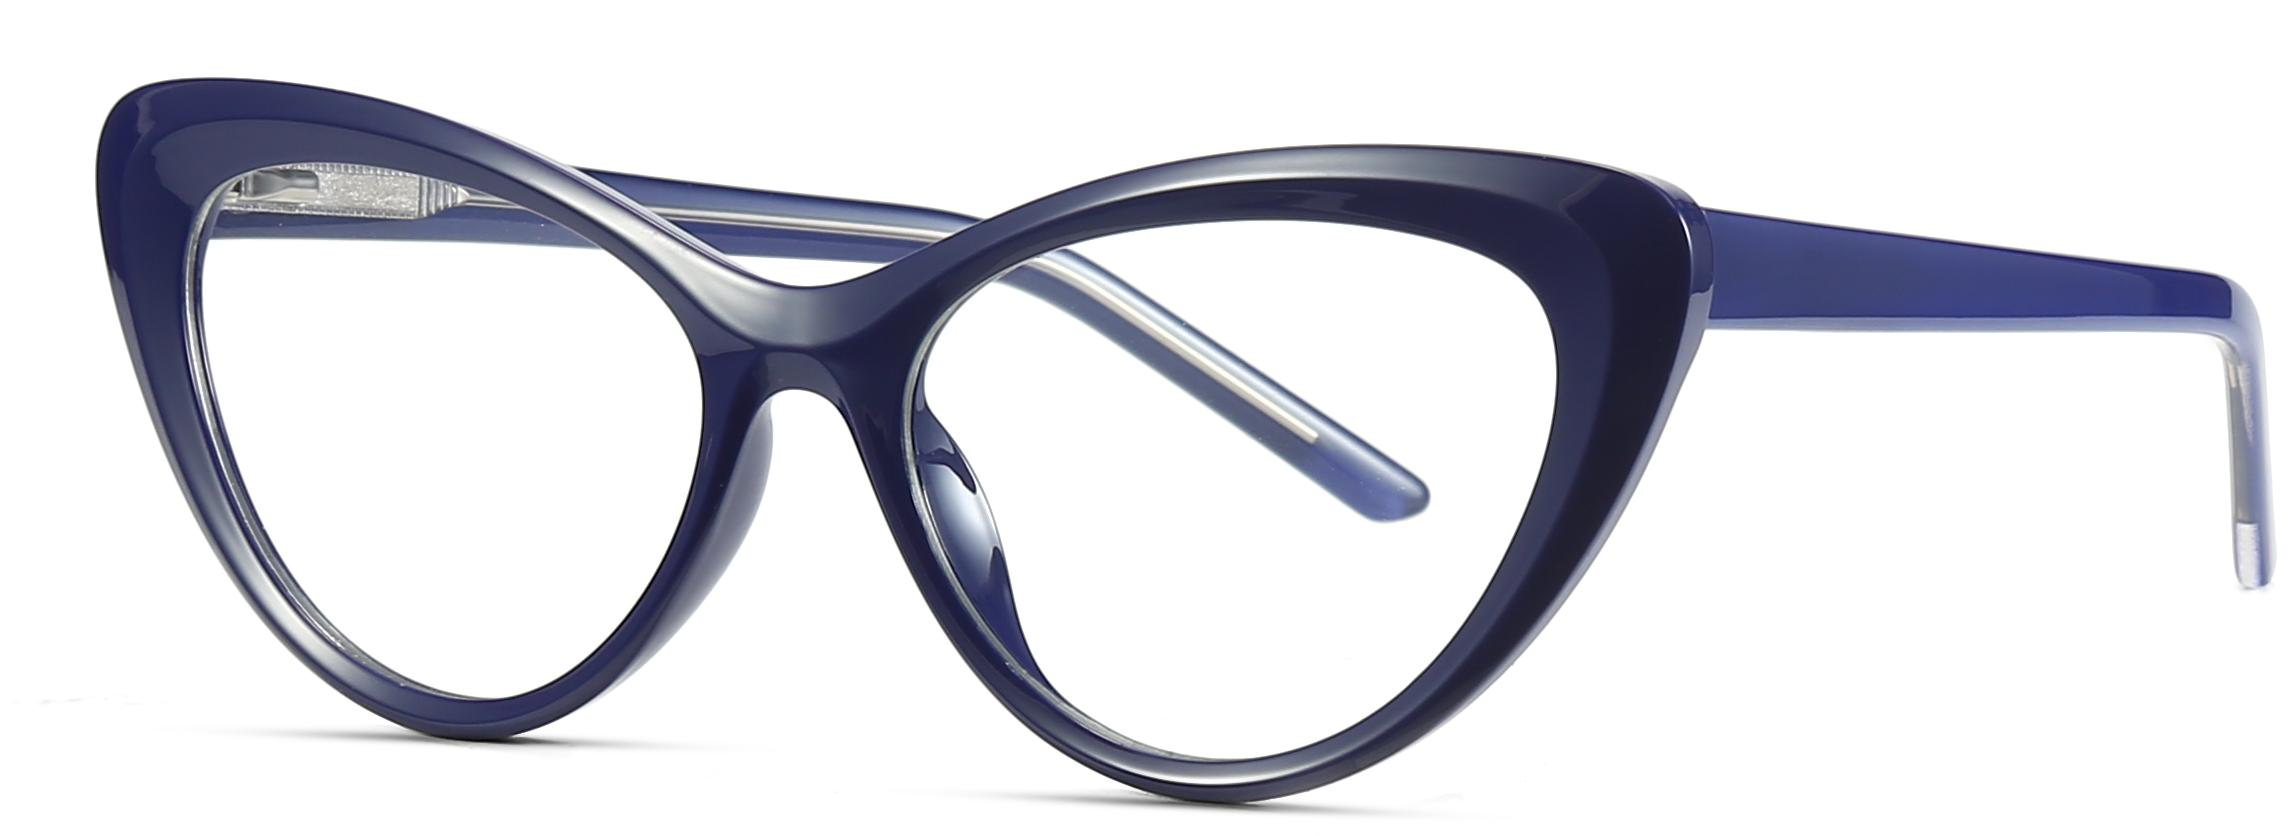 Færdigvarer Mode Cat Eye Shape TR90+CP Anti-blå lyslinse optiske stel til kvinder #2020